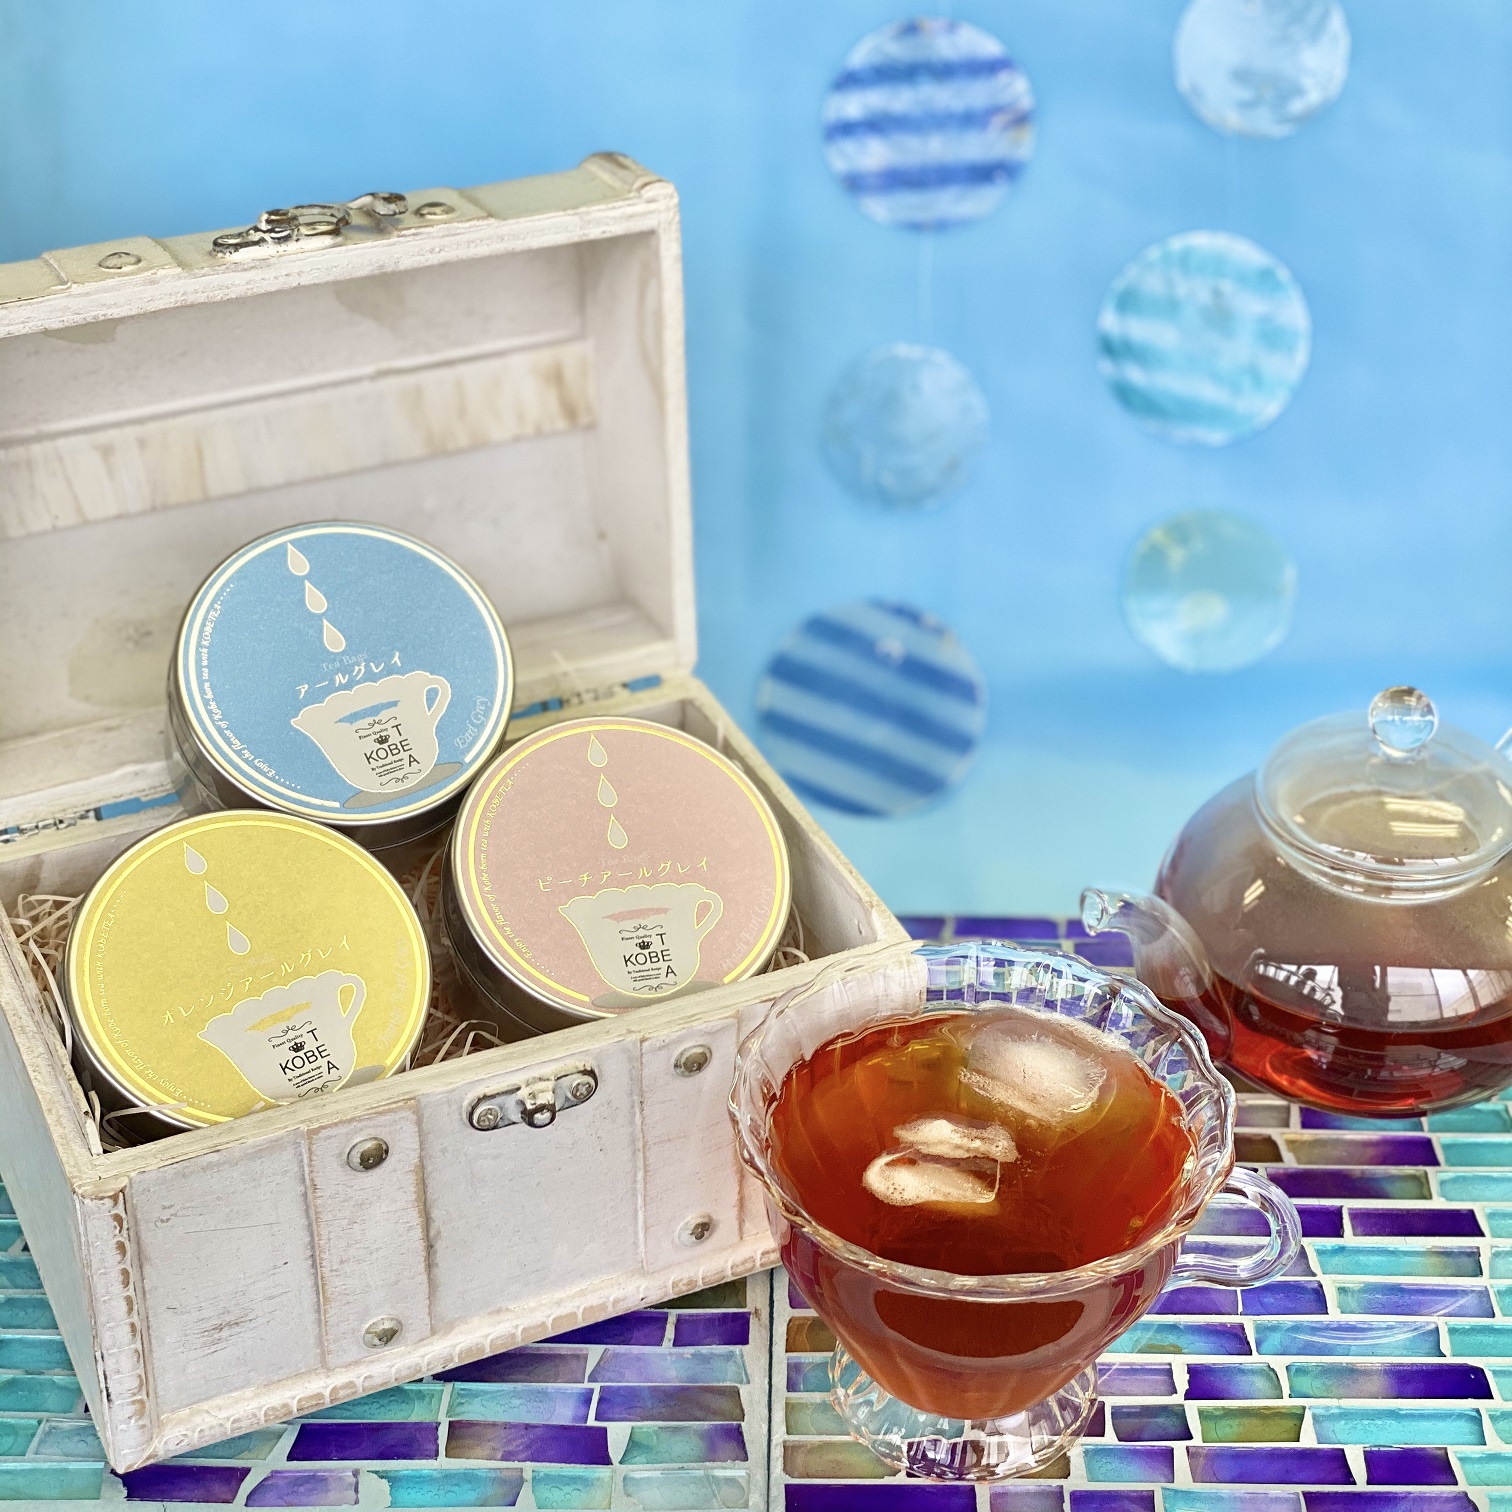 神戶紅茶最新伯爵茶上市超美七色試飲組你喝過嗎 Line購物